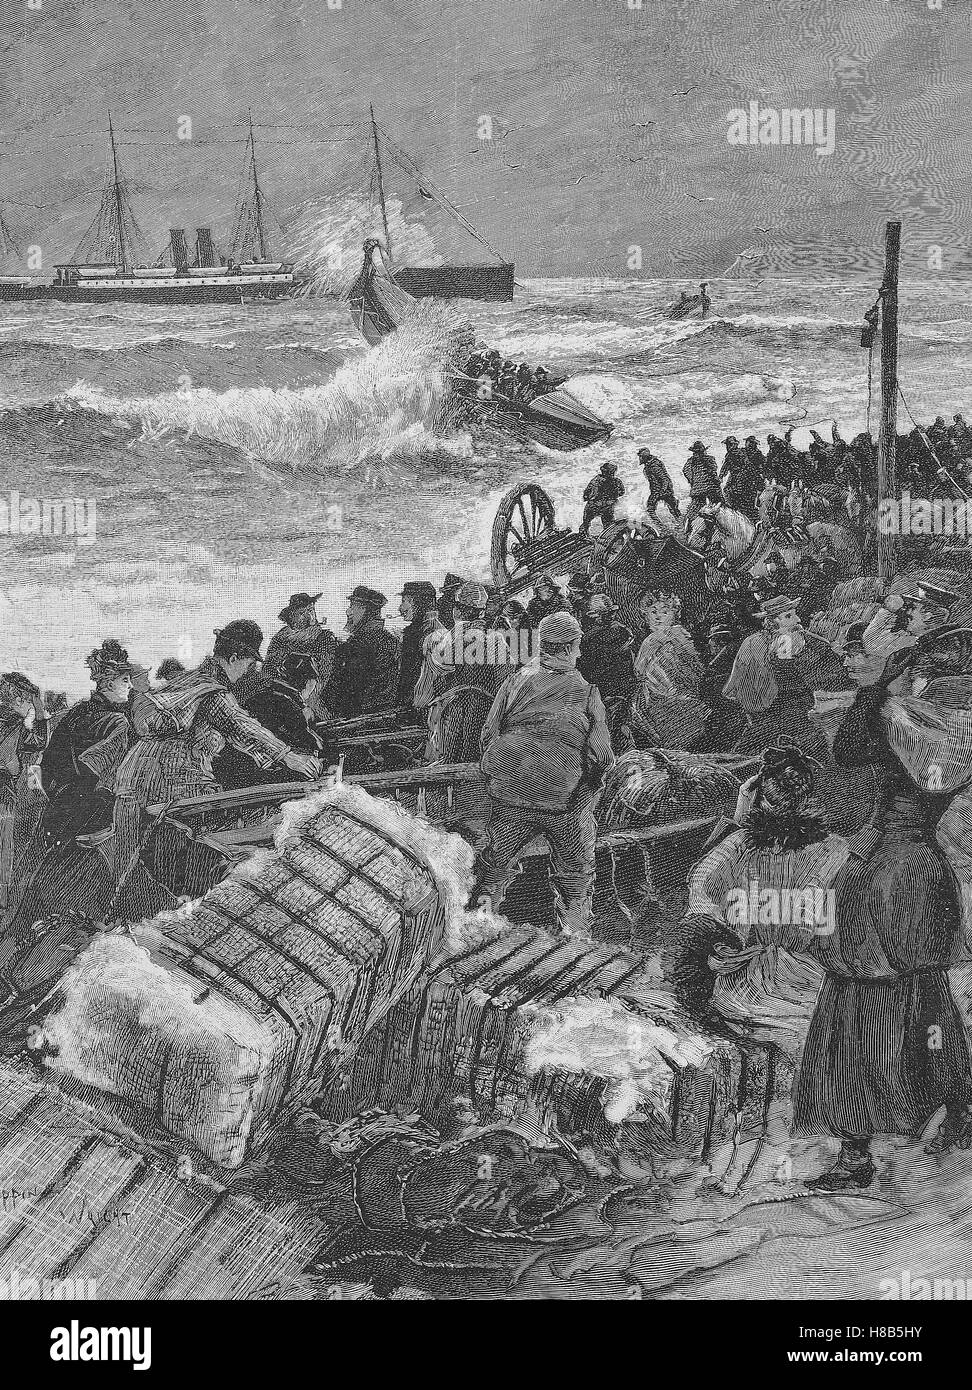 Havarie des Schiffes Eider, die Rettungsboote in Aktion, Holzschnitt aus dem Jahre 1892 Stockfoto